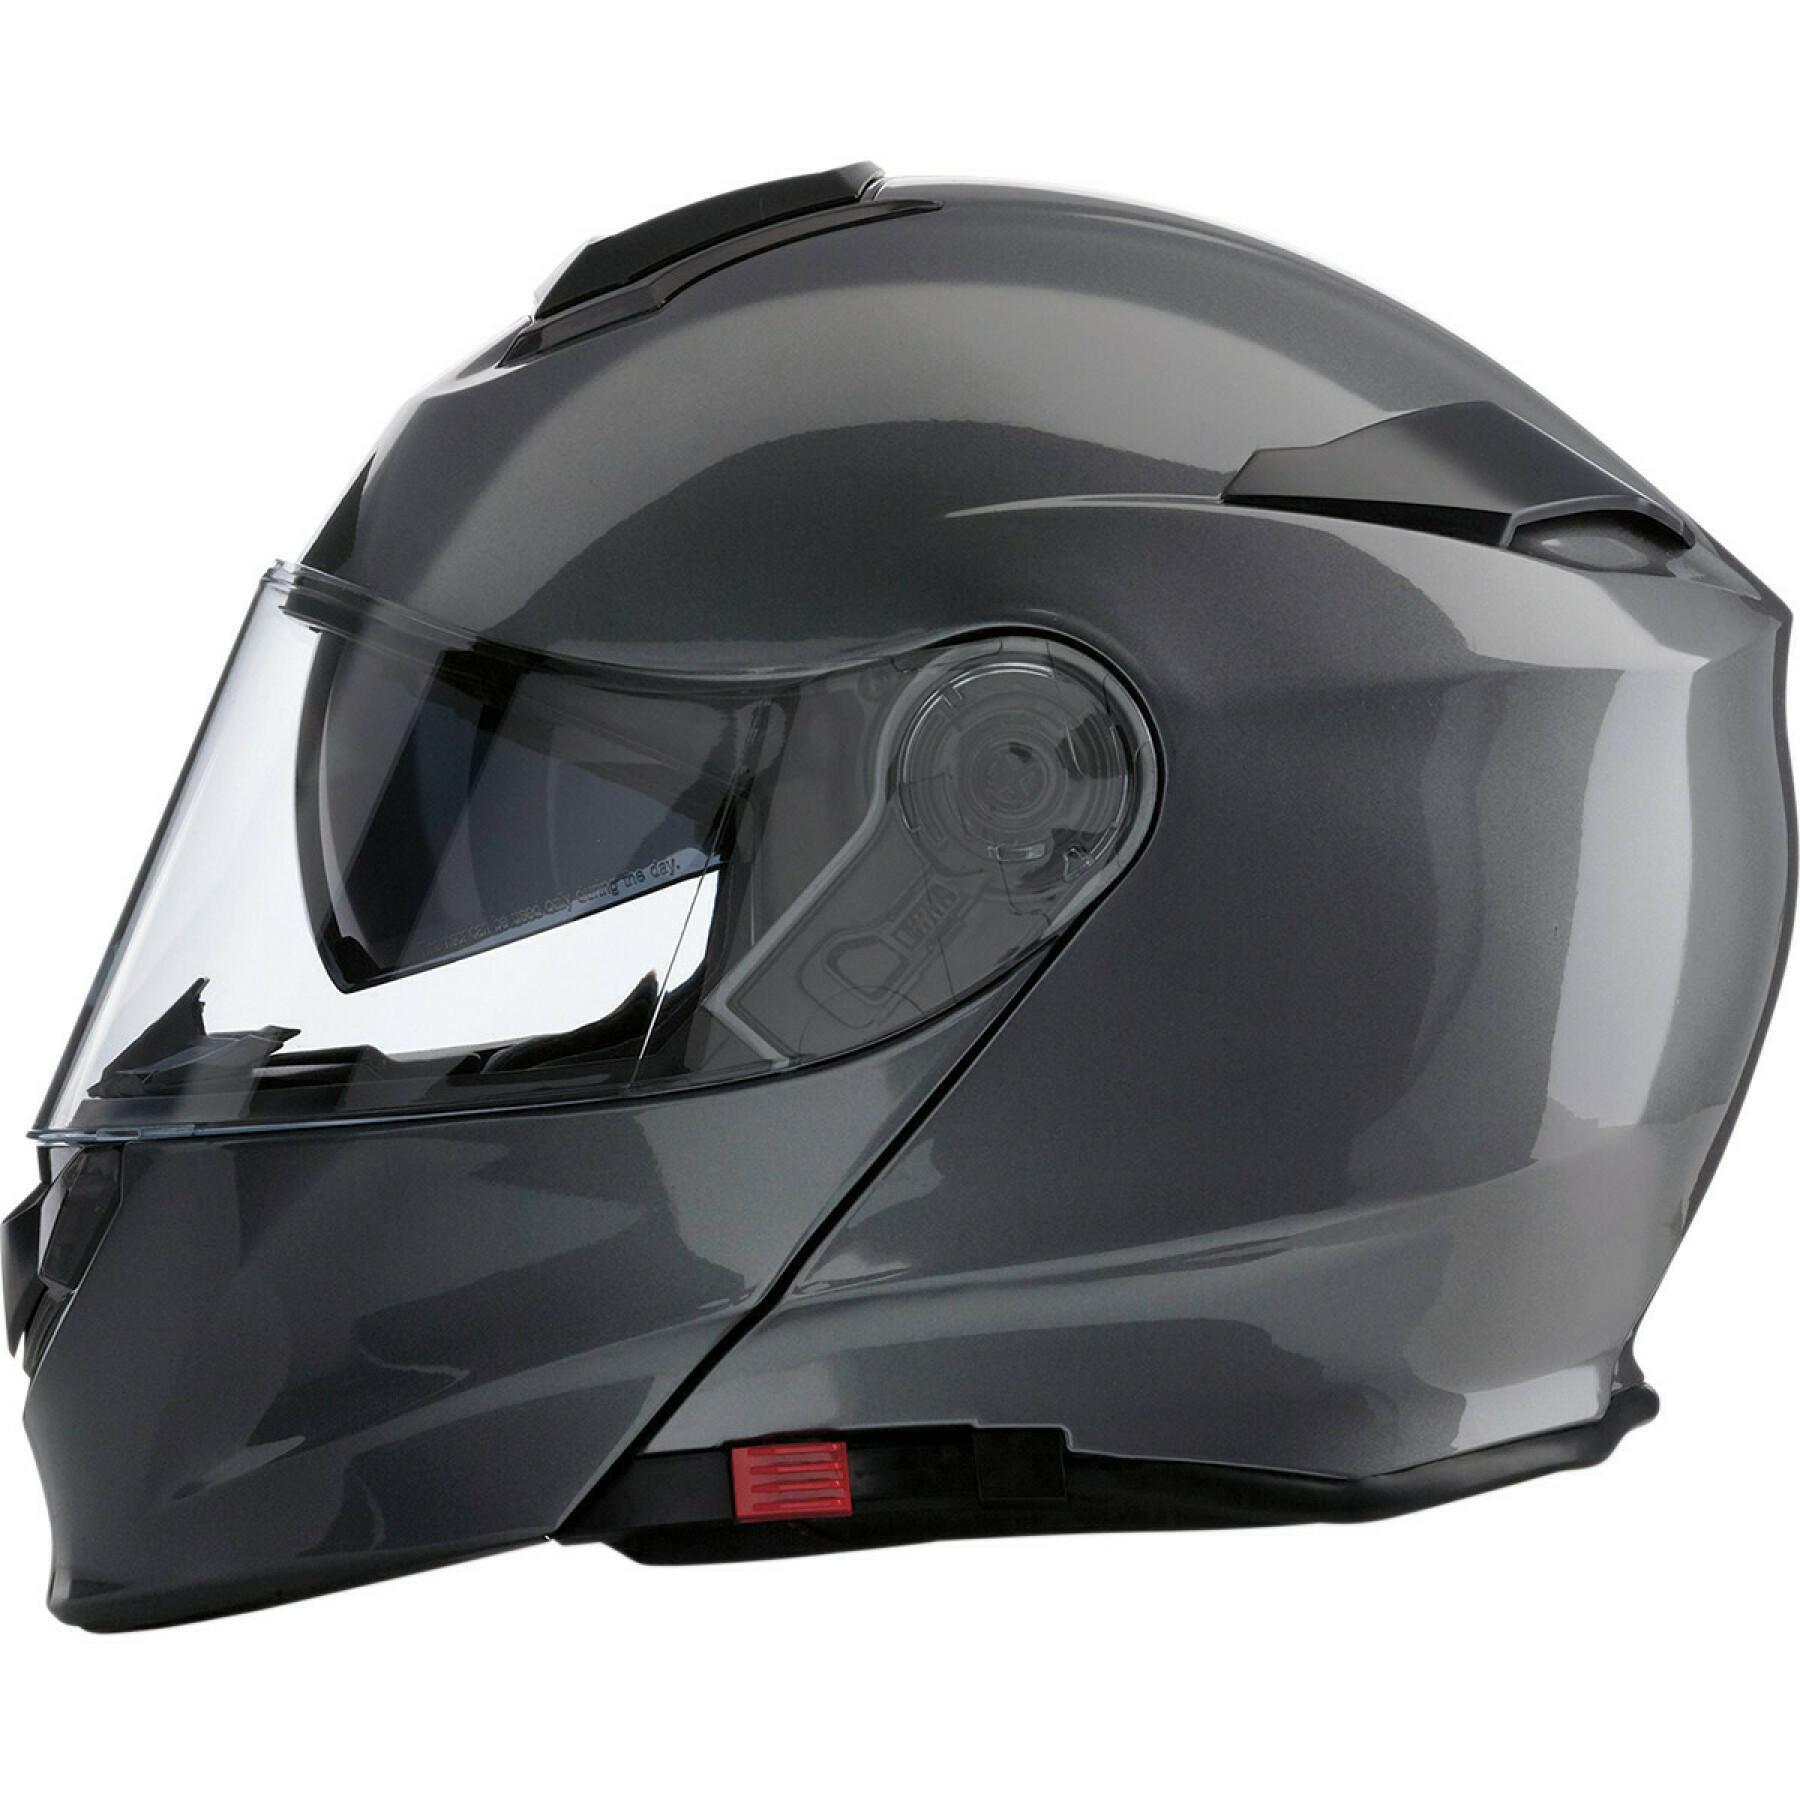 Full face motorcycle helmet Z1R solaris dark silver